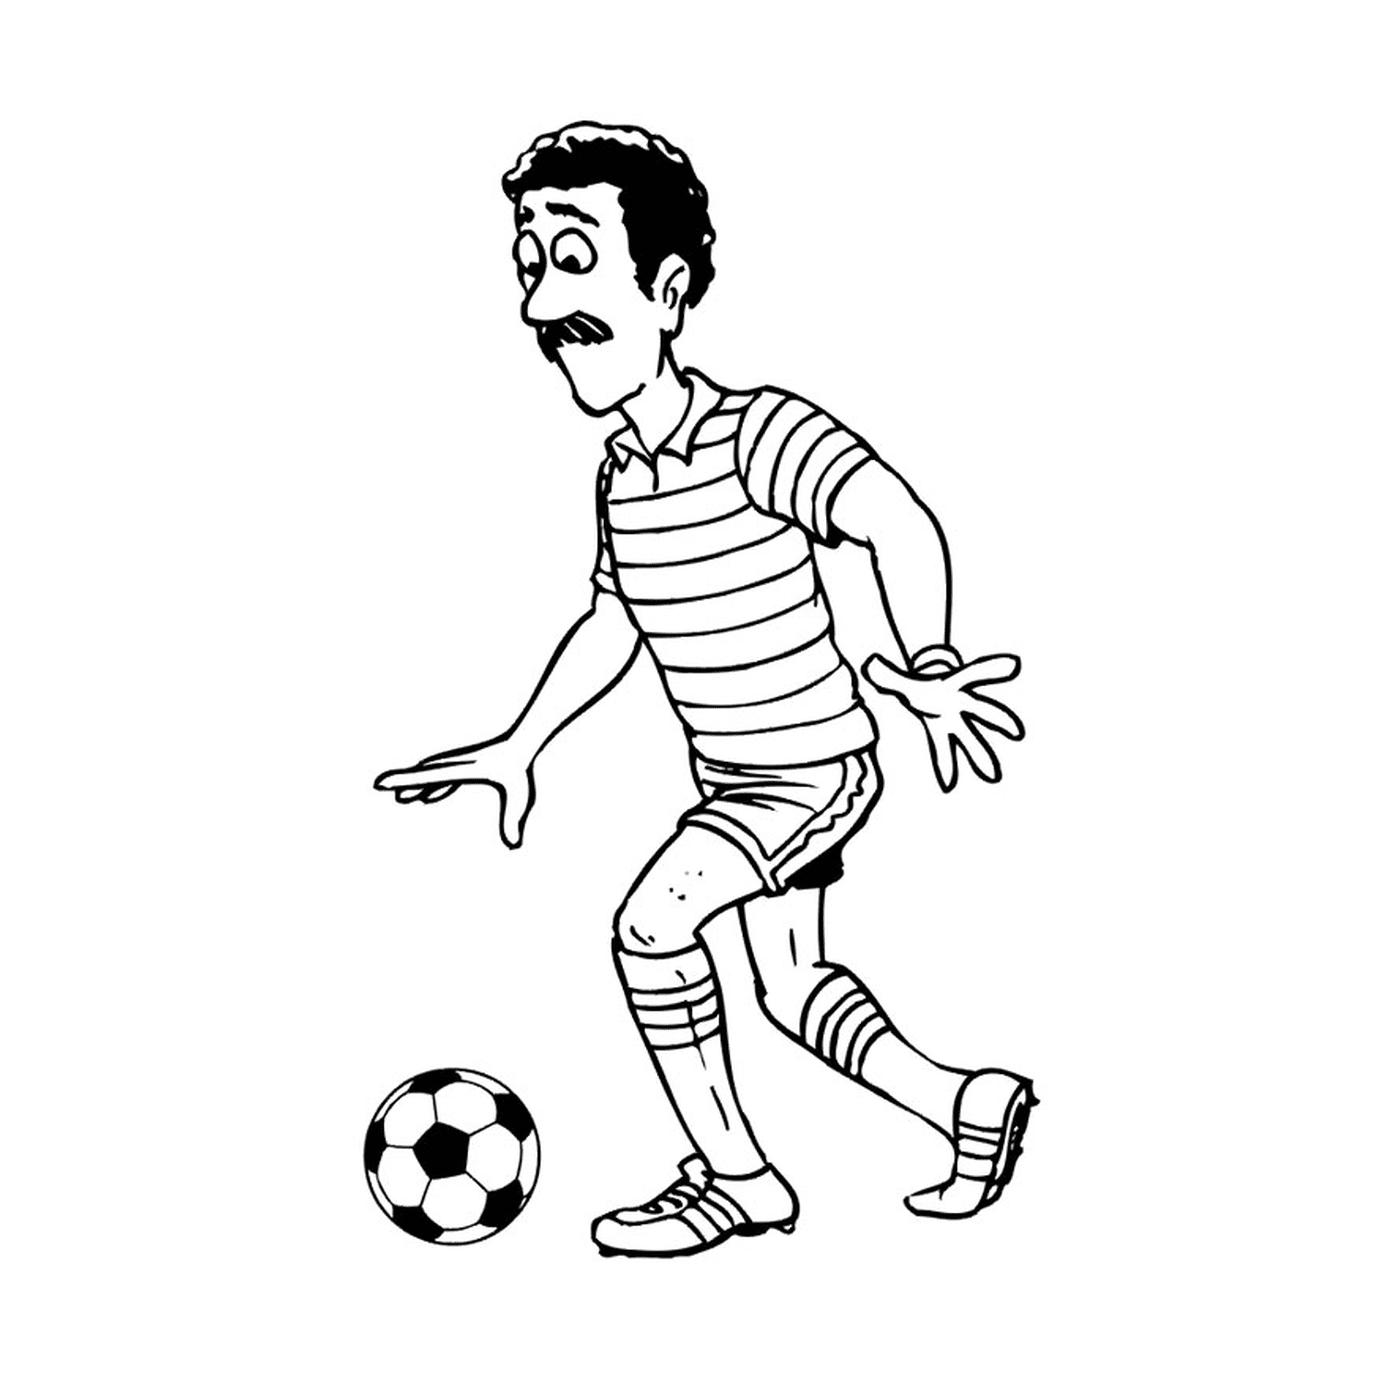  一名男子在阿尔及利亚踢足球 